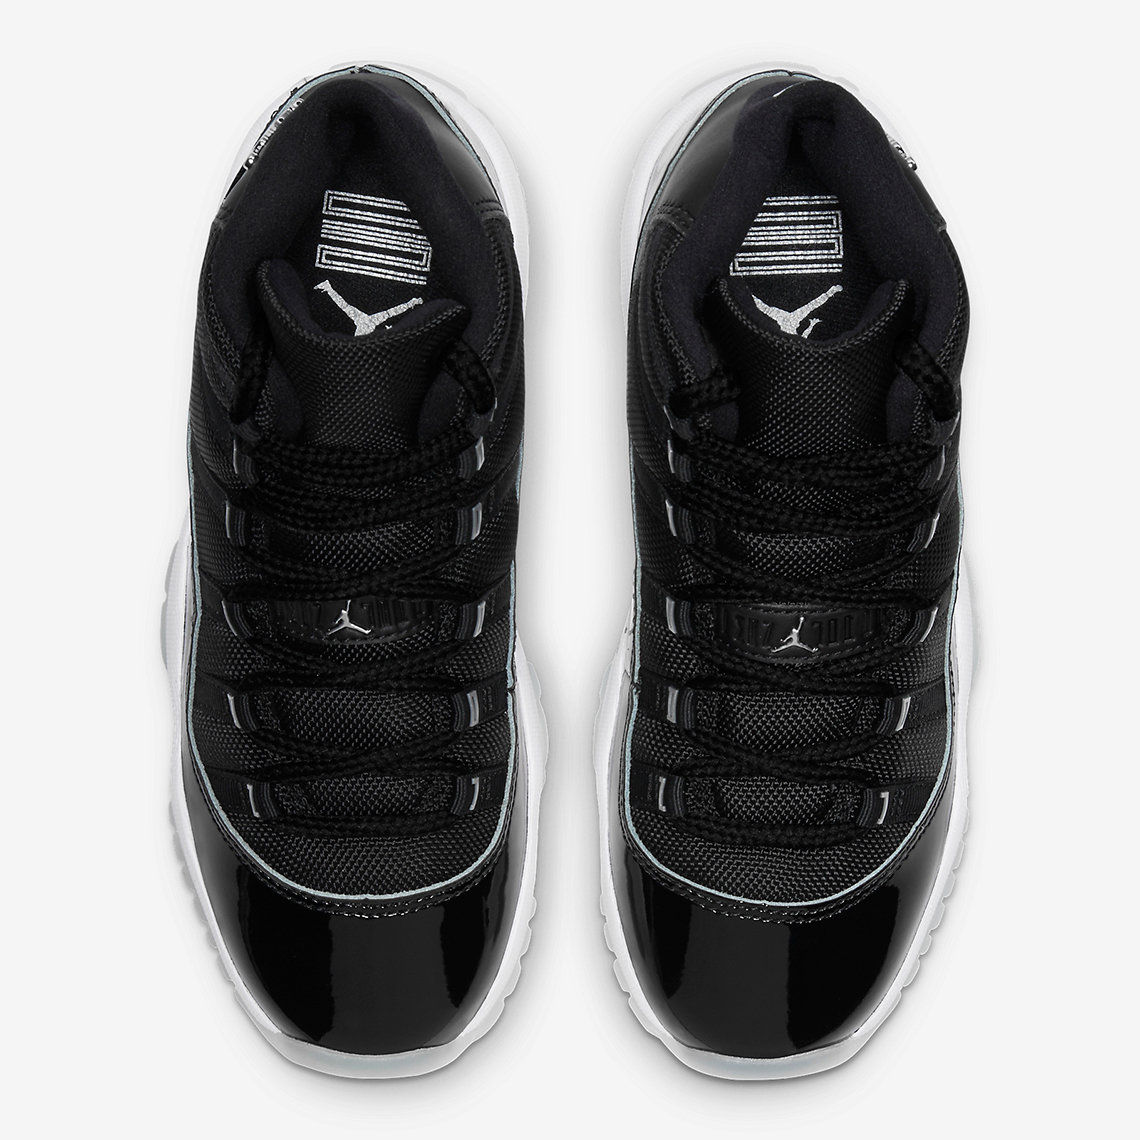 Air Jordan 11 Jubilee - Store List, Photos, Official Info | SneakerNews.com